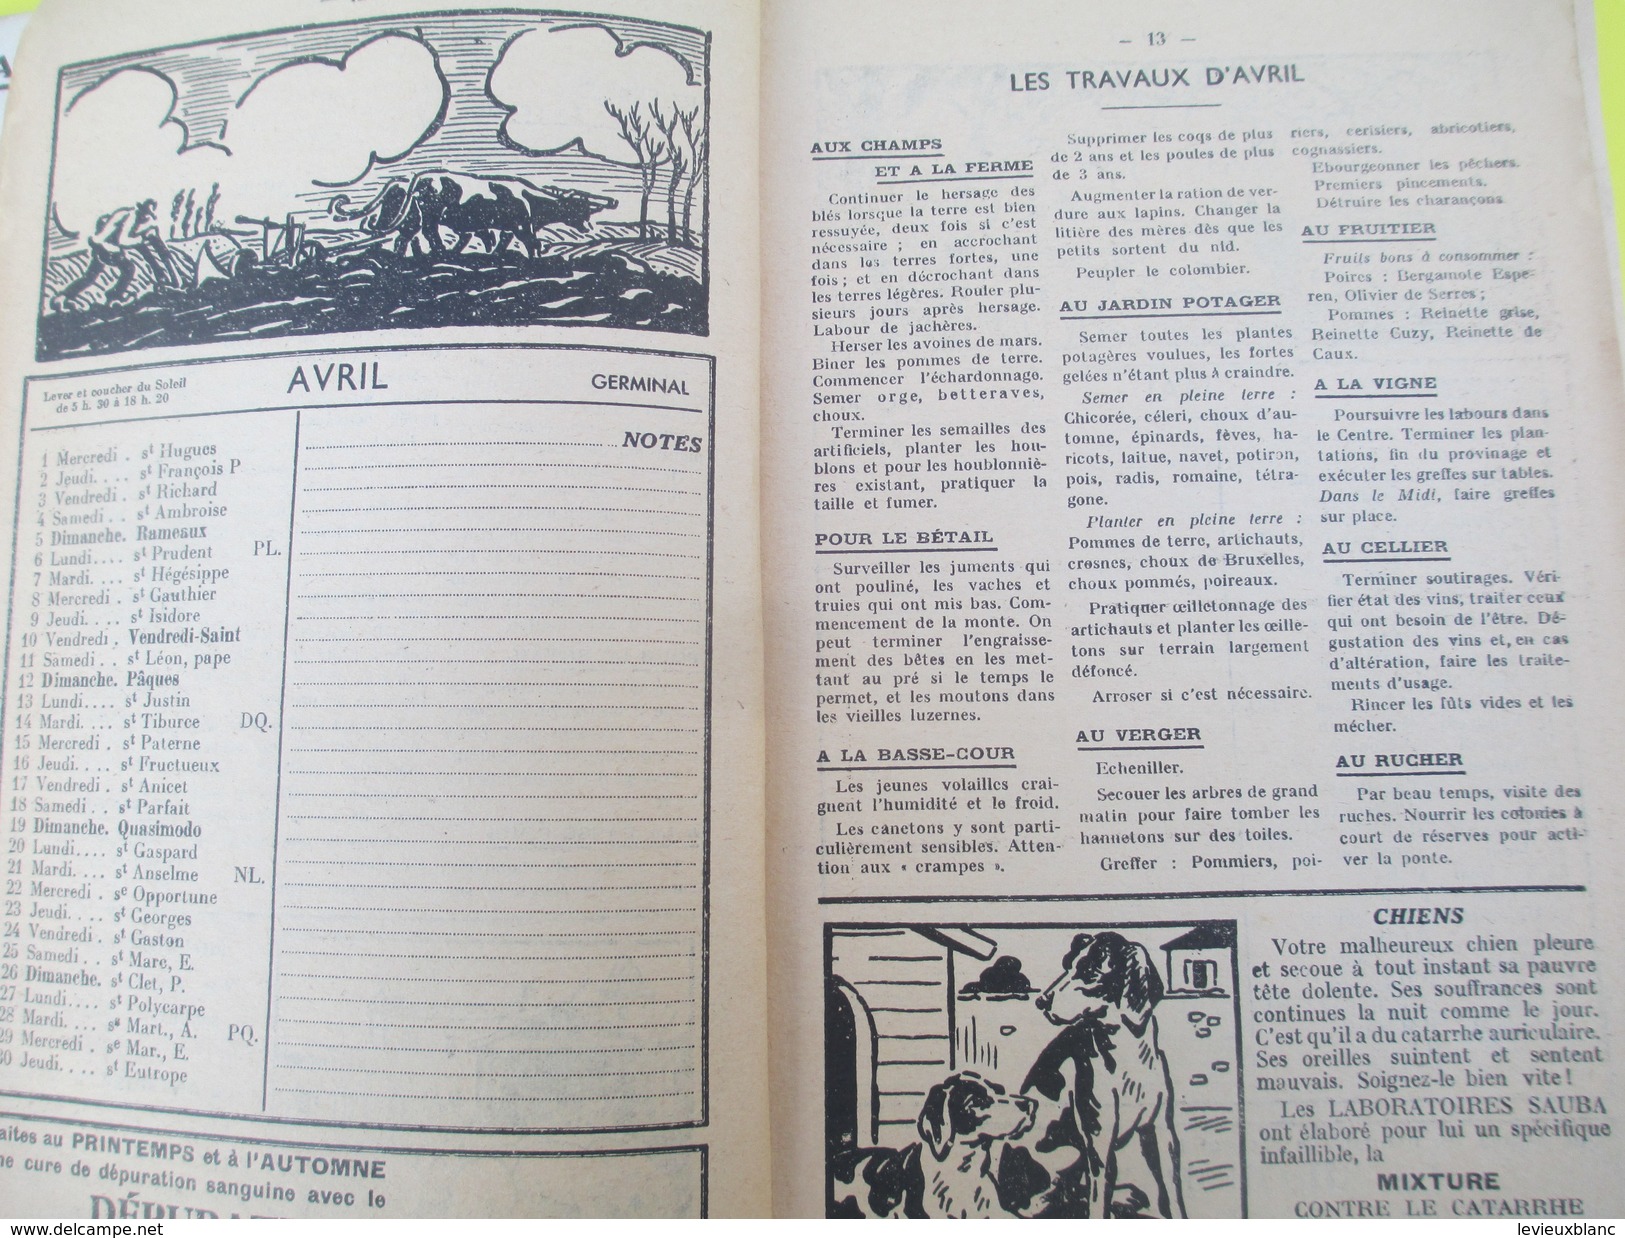 Almanach Sauba/ Laboratoires SAUBA/Pharmacie De La Gare /Jean Pfeifle / GARGAN/ 1936      CAL371 - Autres & Non Classés